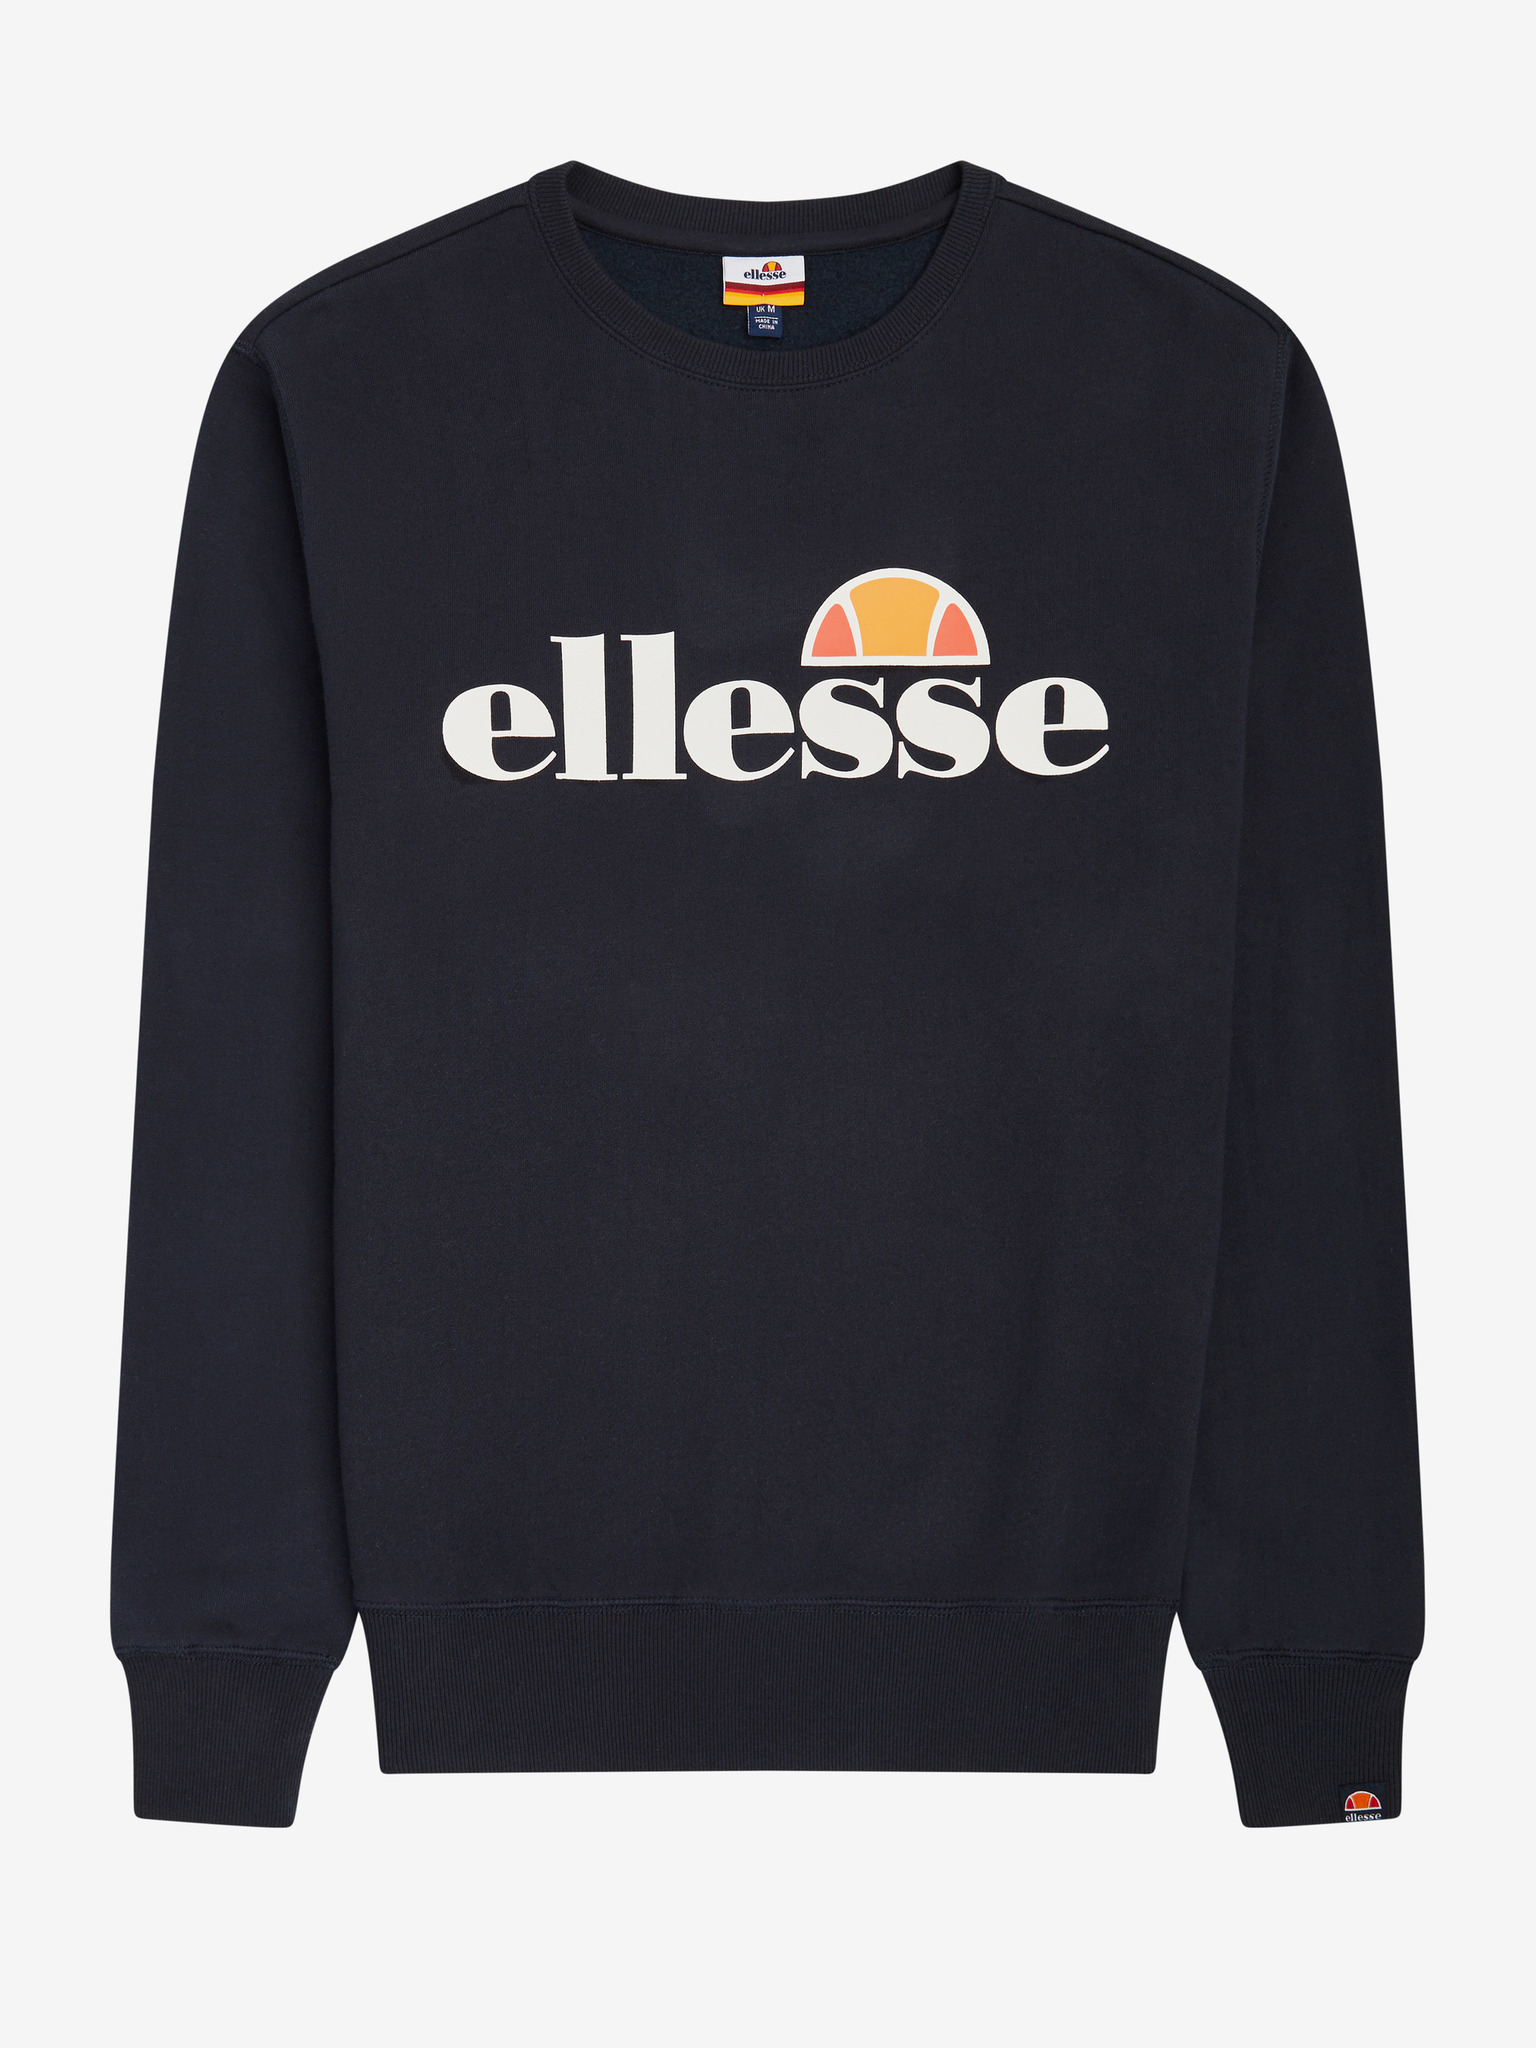 Ellesse Men's Fierro Sweatshirt, Black